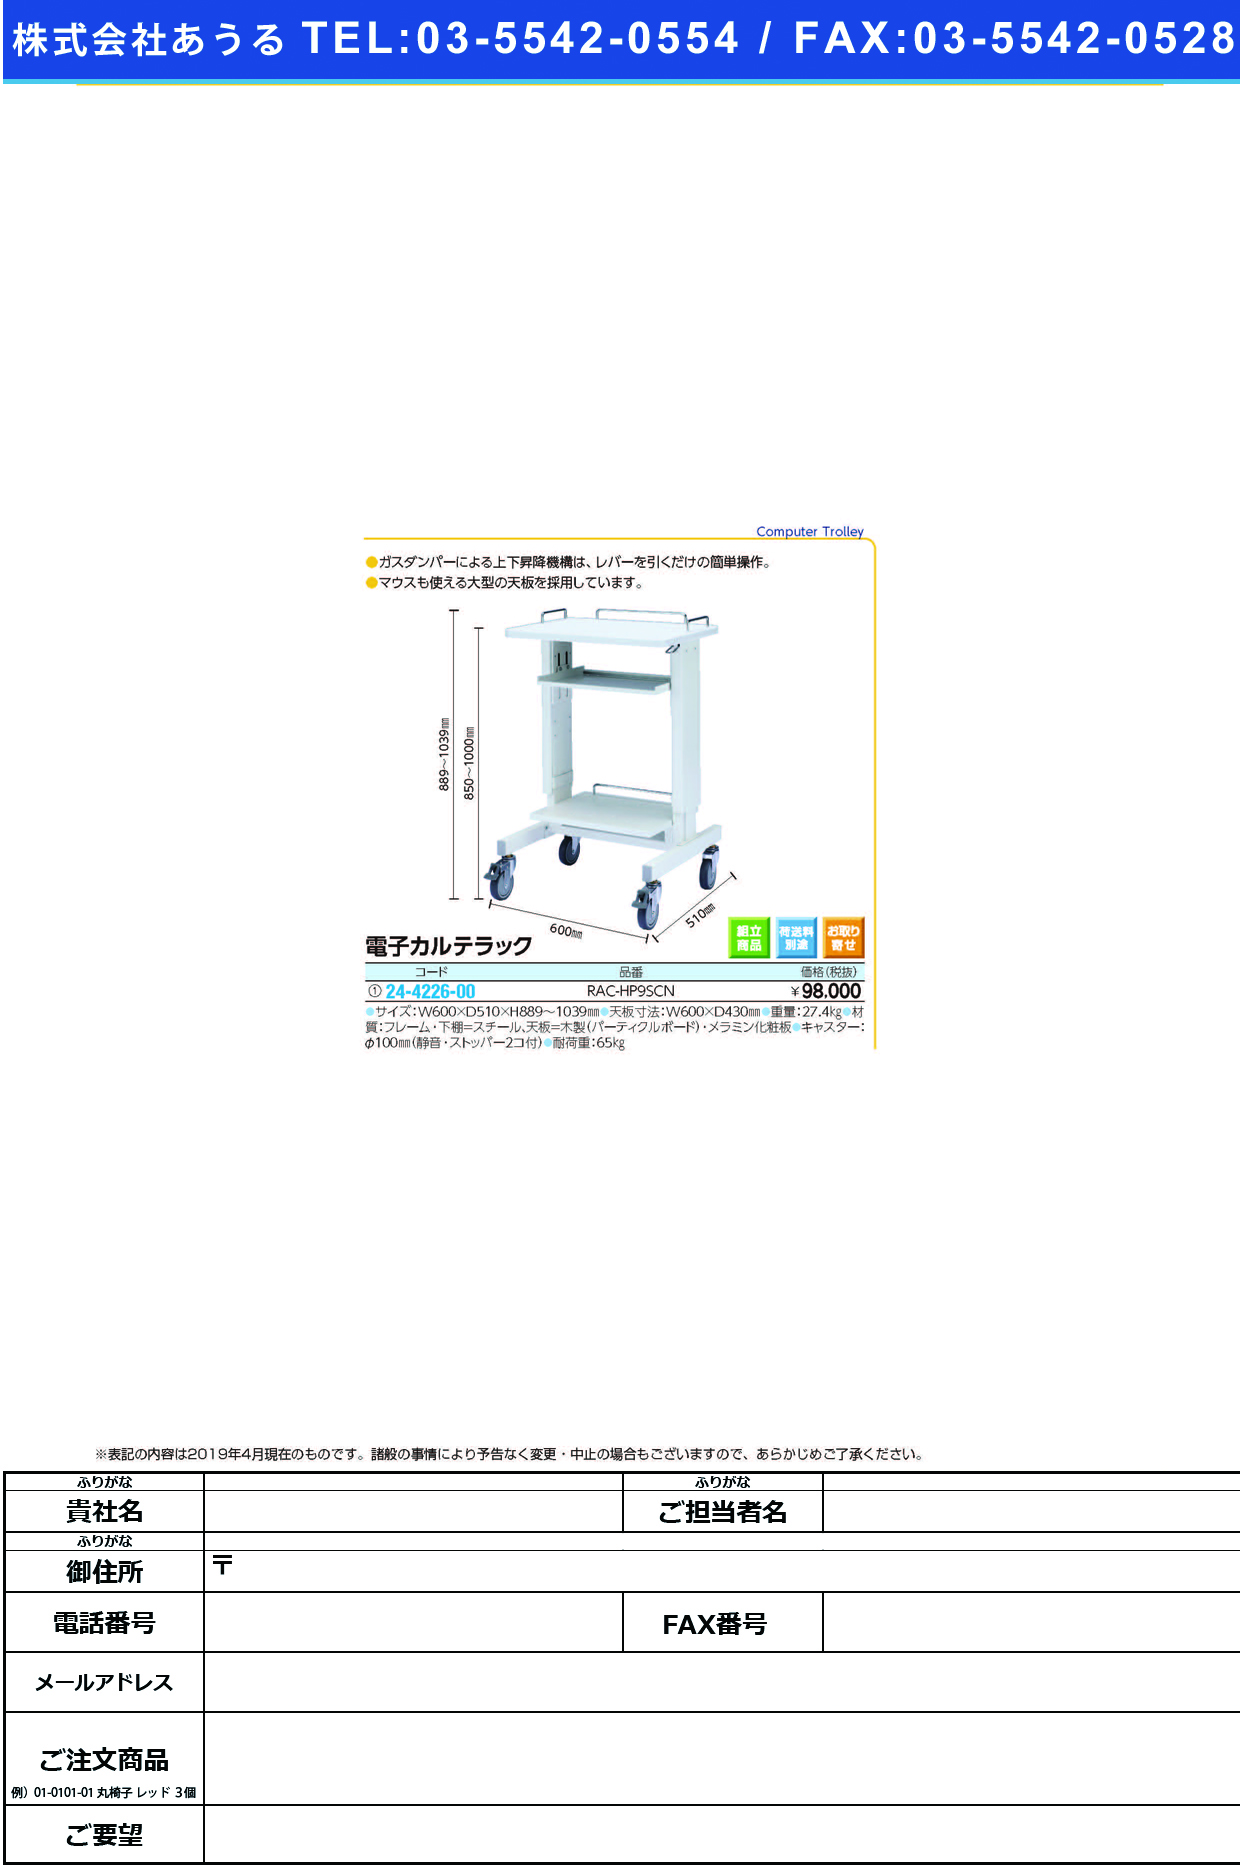 (24-4226-00)電子カルテラック RAC-HP9SCN ﾃﾞﾝｼｶﾙﾃﾗｯｸ【1台単位】【2019年カタログ商品】